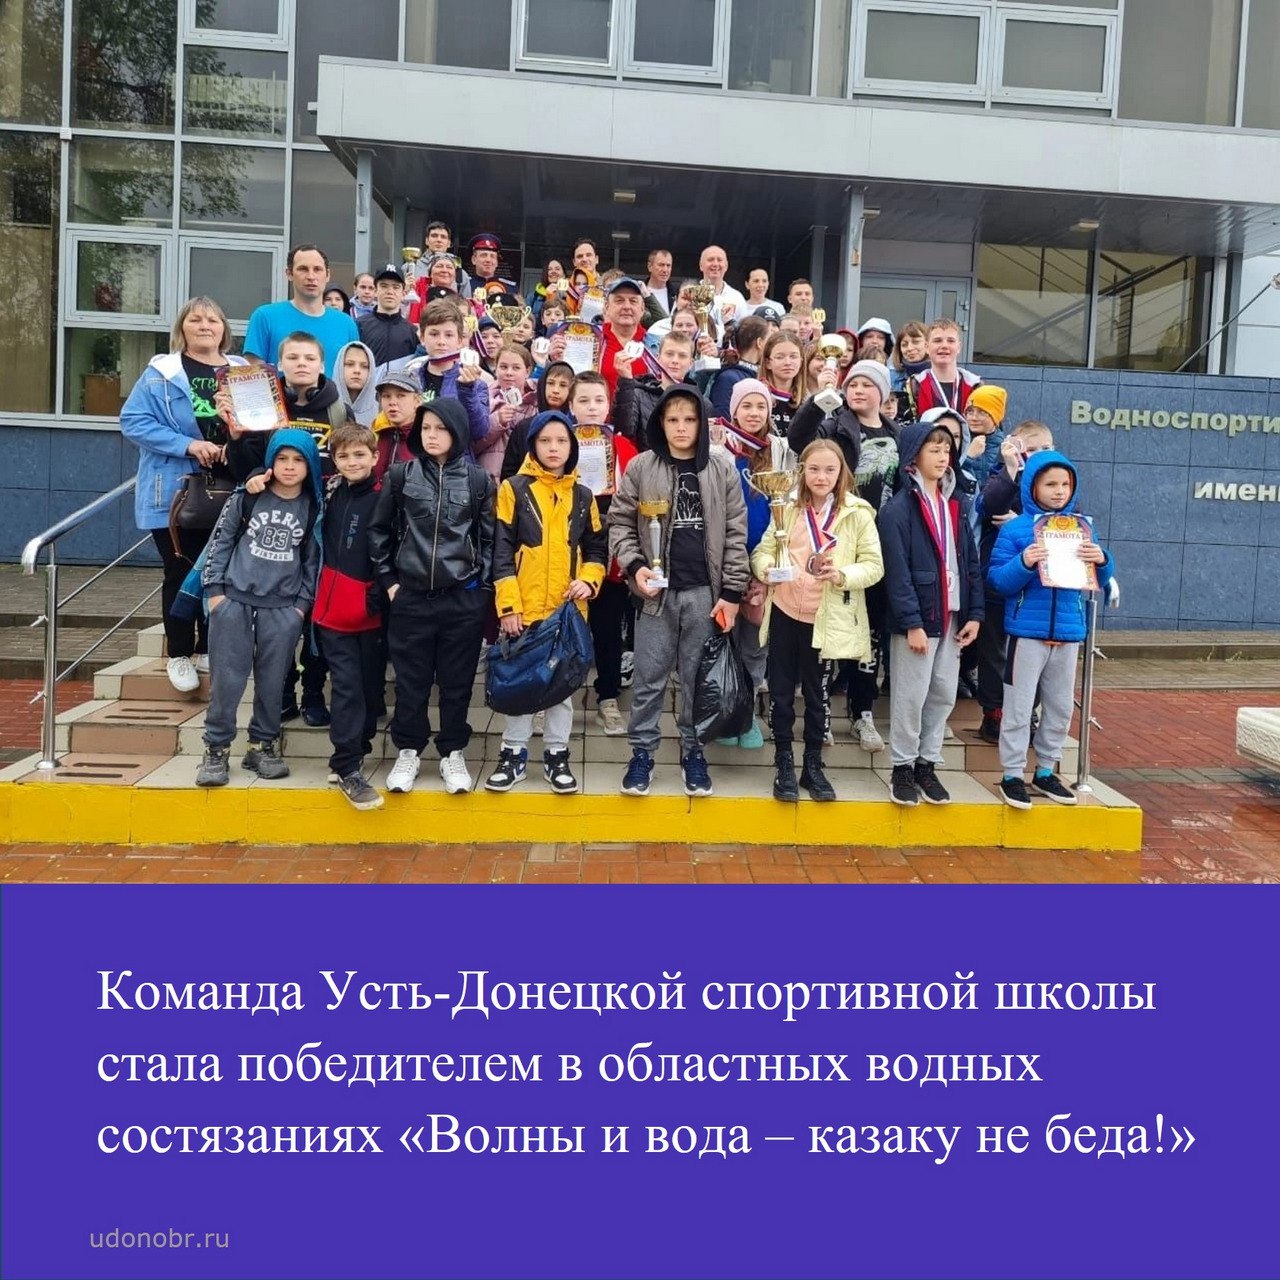 Команда Усть-Донецкой спортивной школы стала победителм областных водных состязаниях «Волны и вода – казаку не беда!»